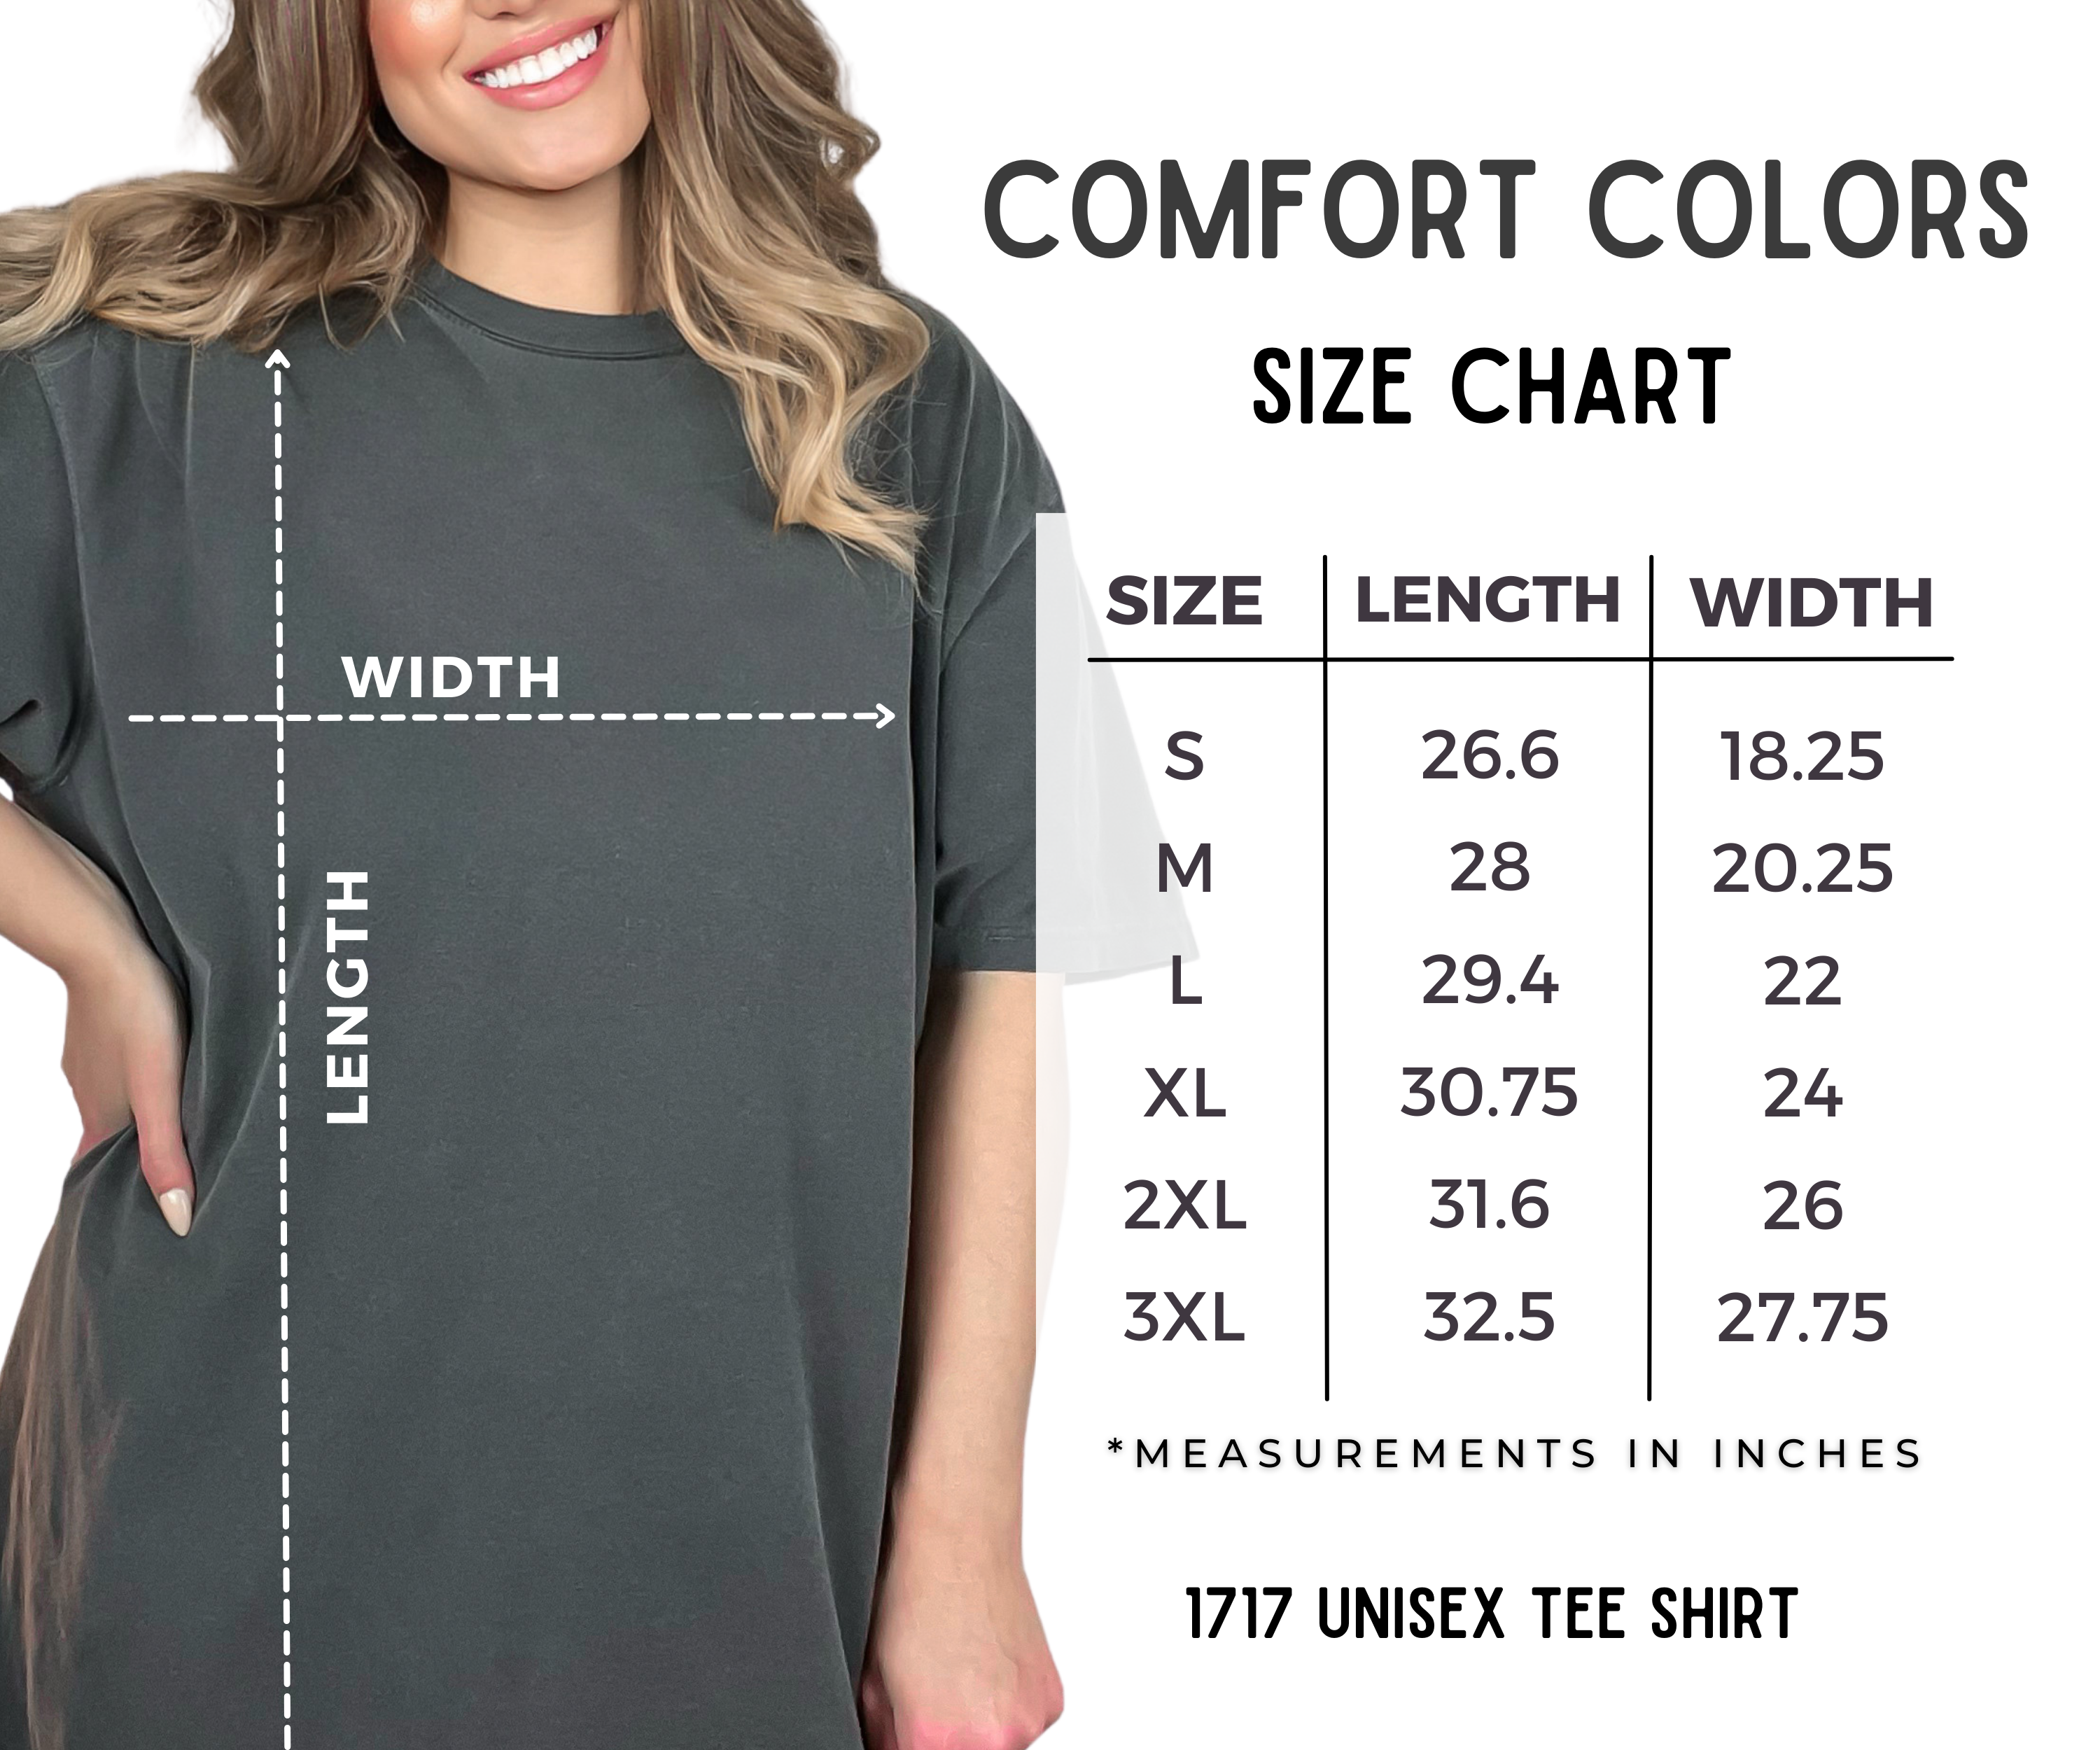 Favorite Daughter Funny Mom T-Shirt - Comfort Colors Shirt